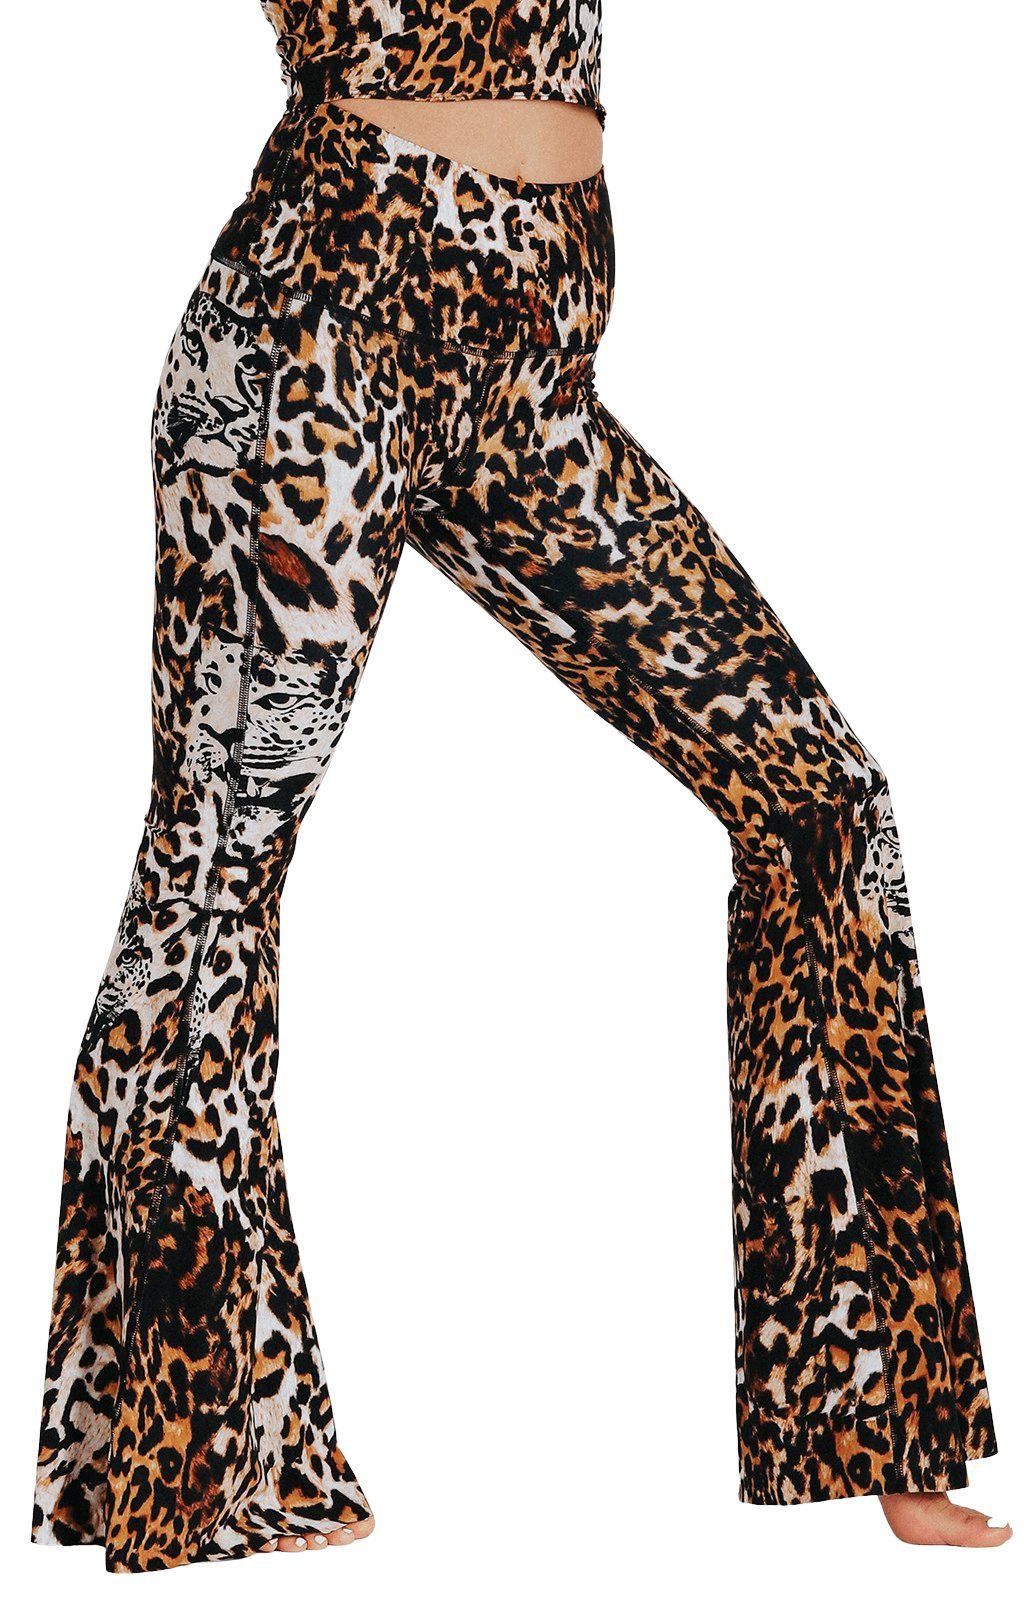 Trendy Printed Leggings Design || printed leggings with tops || leggi -  YouTube